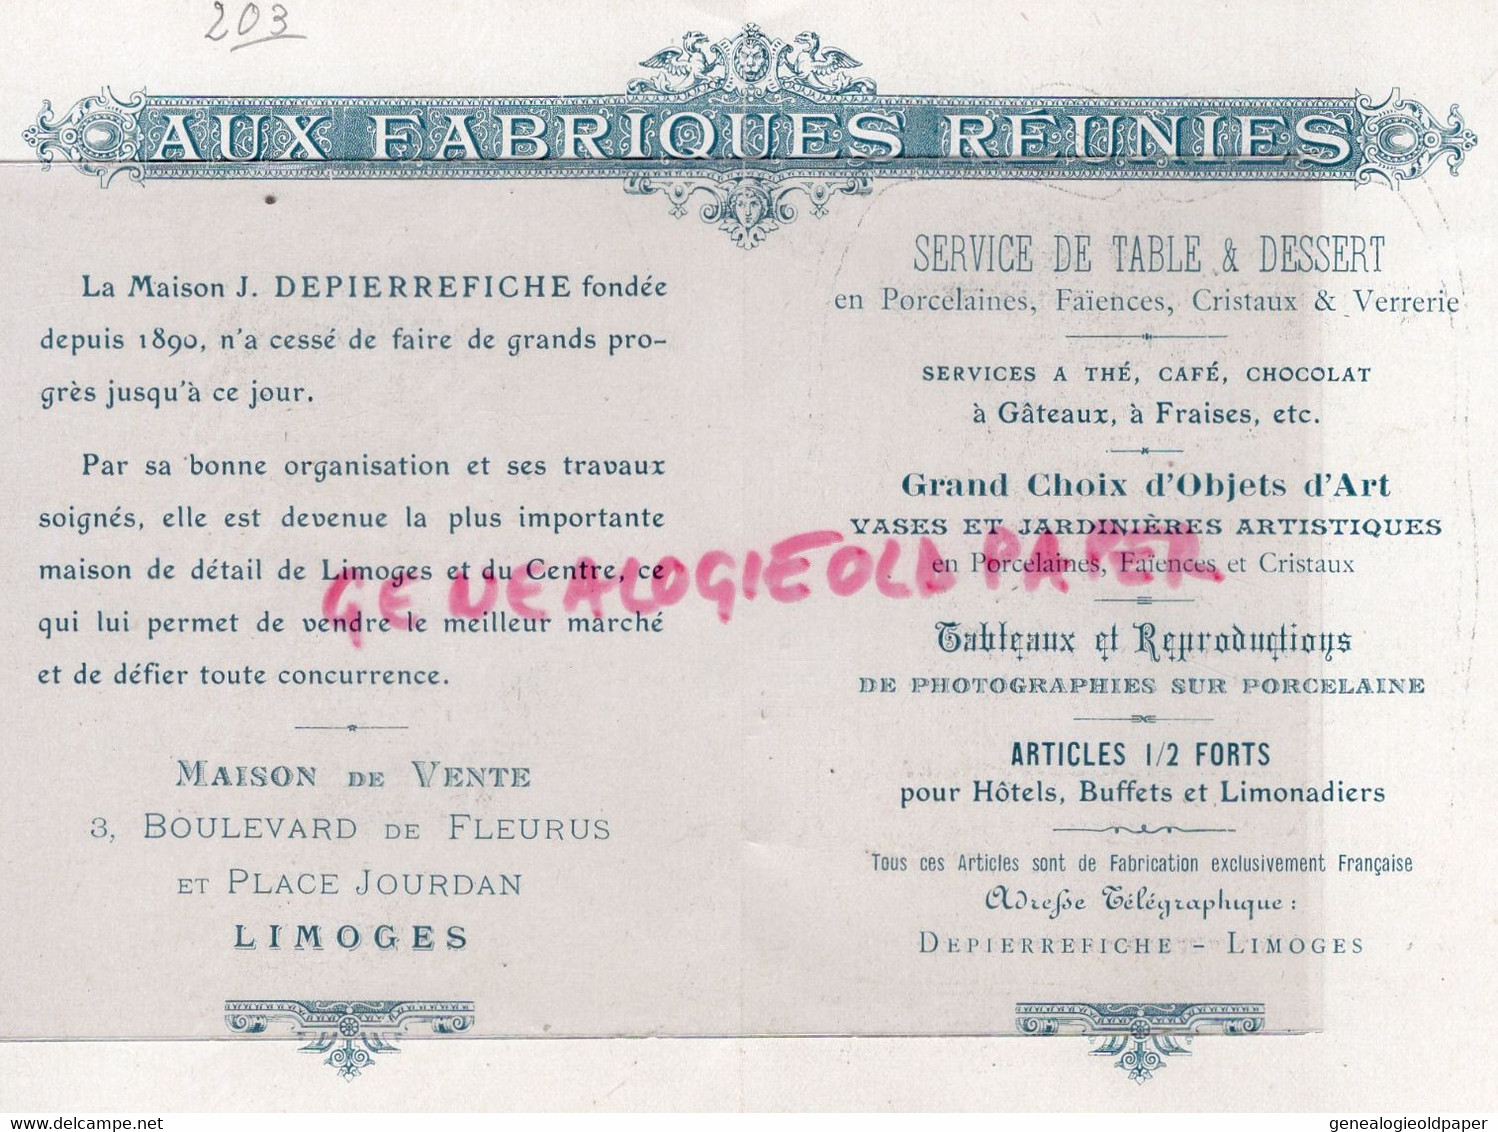 87- LIMOGES- AUX FABRIQUES REUNIES- J. DEPIERREFICHE -3 BOULEVARD FLEURUS-PORCELAINE-BARBICHET-IMPRIMERIE JOUANNEM MEGE - Petits Métiers